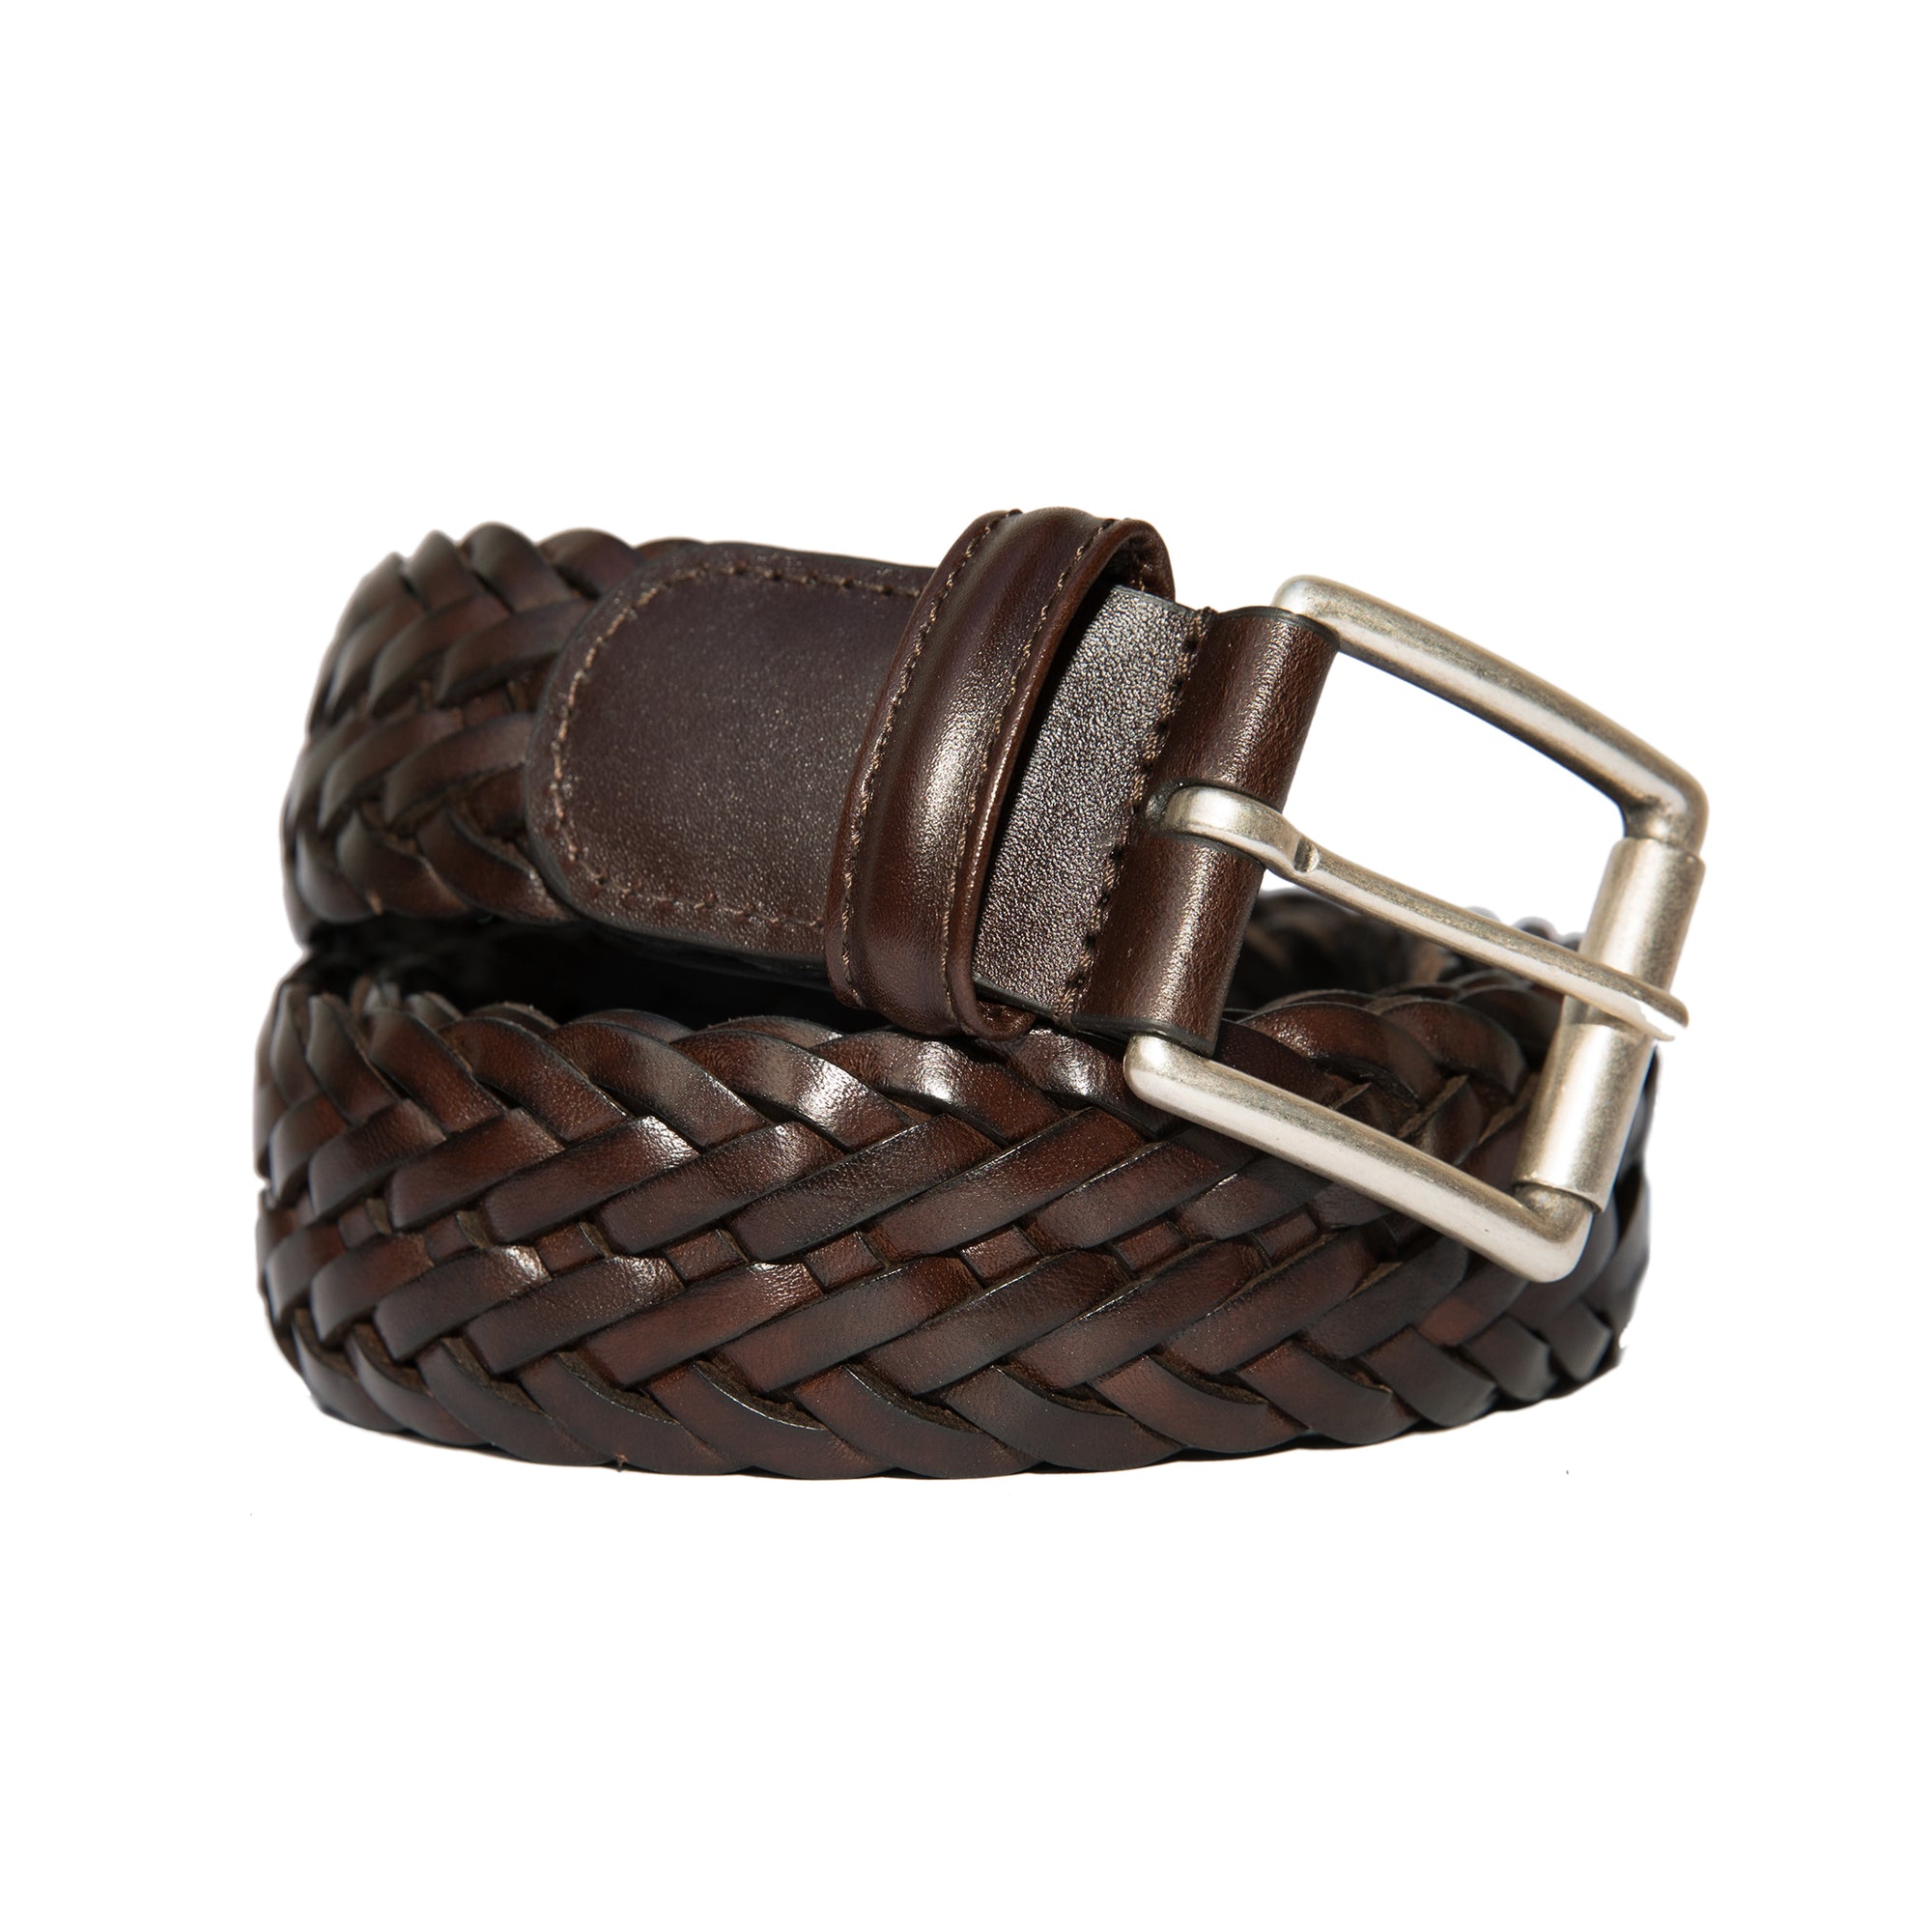 Woven Leather Belt - Dark Brown